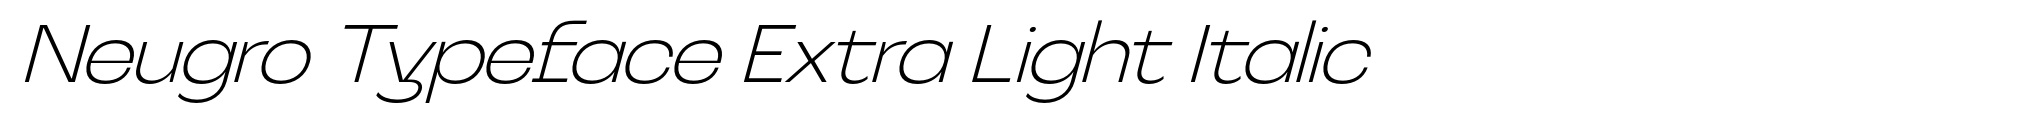 Neugro Typeface Extra Light Italic image